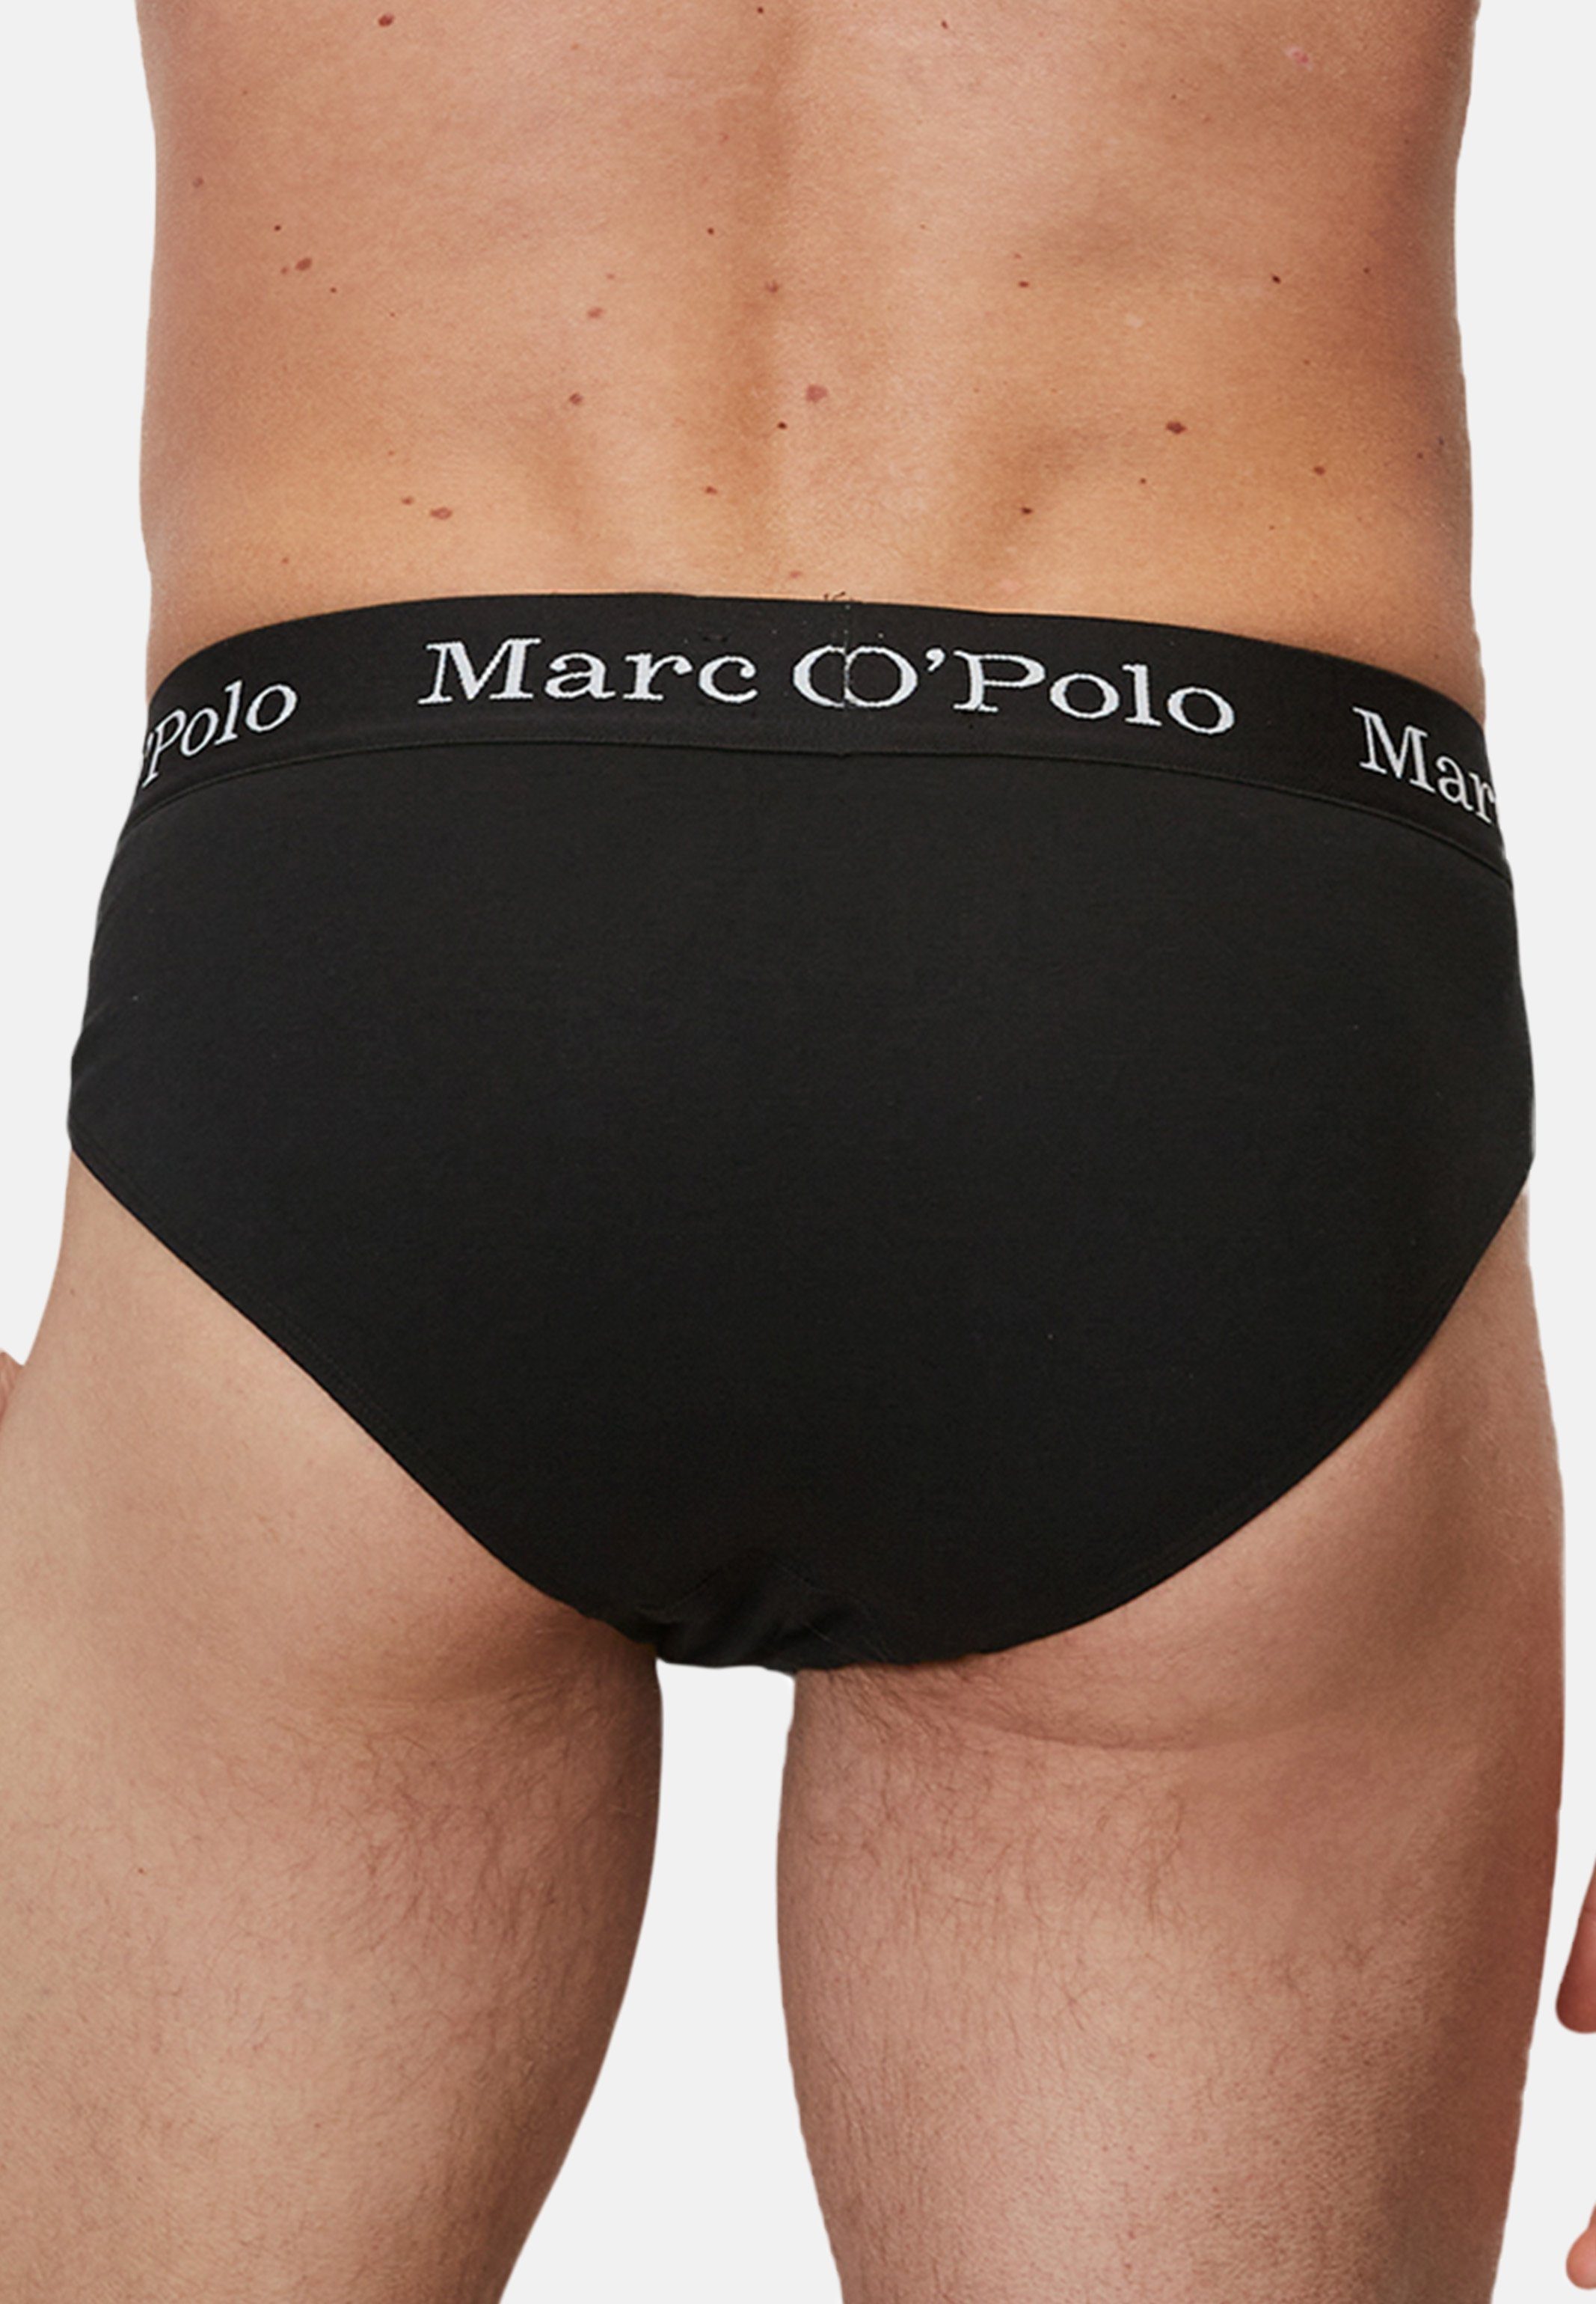 Eingriff Marc - - (Spar-Set, Organic - Pack Slip Baumwolle Elements Cotton Slip Schwarz O'Polo Ohne Unterhose 3-St) / 3er